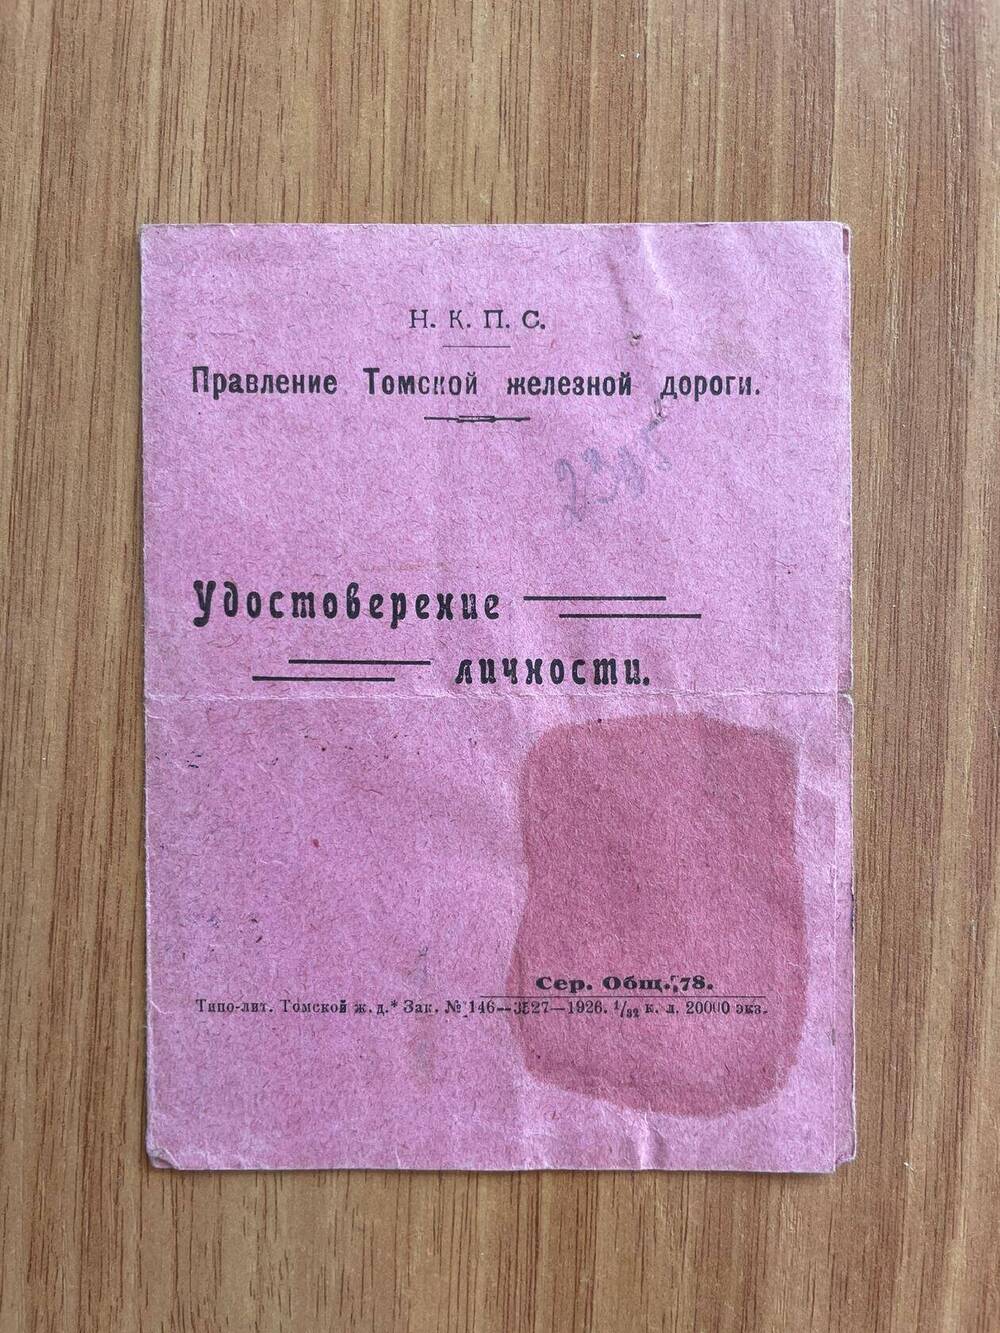 Удостоверение от 24.11.1926 года в том, что Яковлев Моисей Васильевич состоит на службе ст.Ояш Томской железной дороги и занимает должность заведующего школой-интернатом.